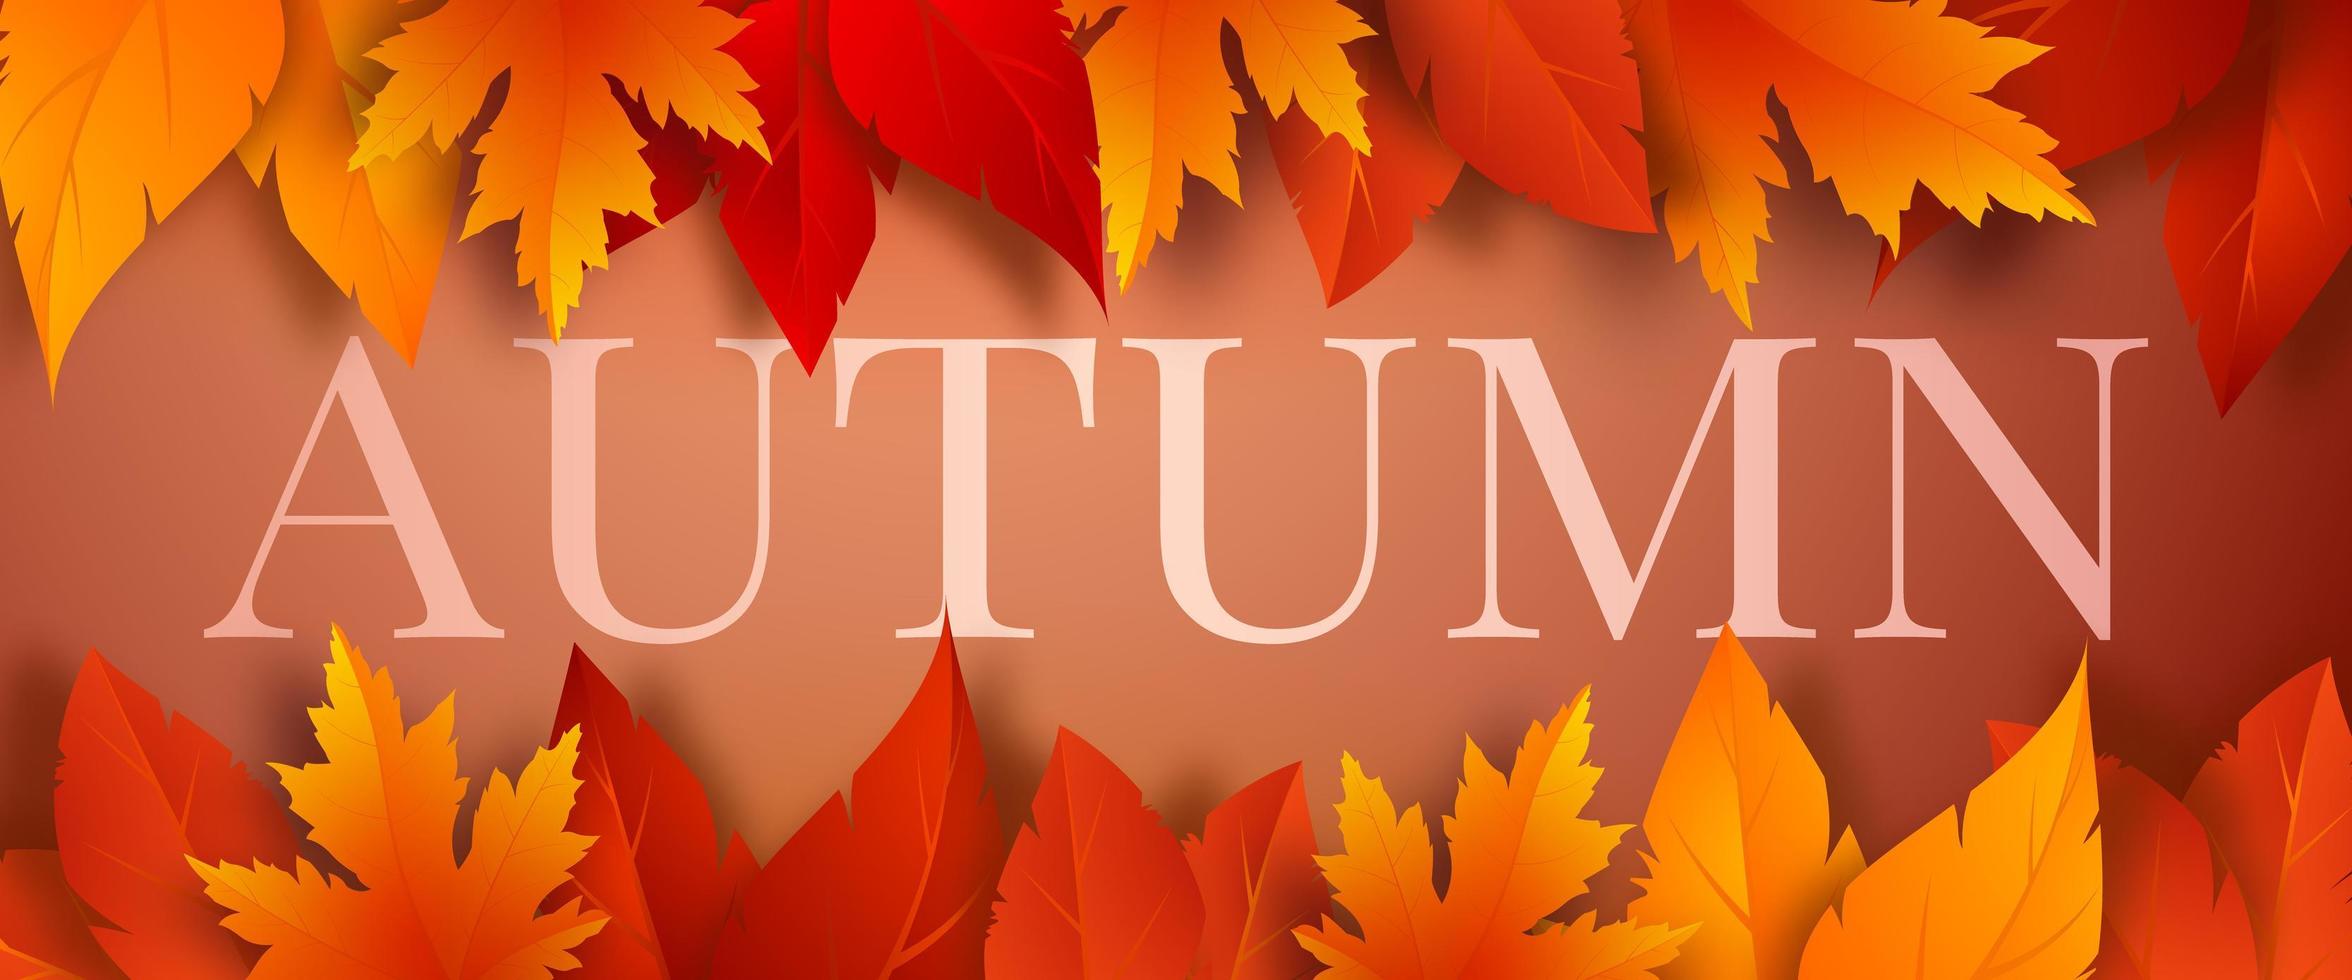 modelo de banner de temporada de outono com folhas de outono vermelhas, amarelas e laranja em um fundo marrom. design para cartão de felicitações, publicidade, banner da web, folheto. ilustração vetorial. vetor